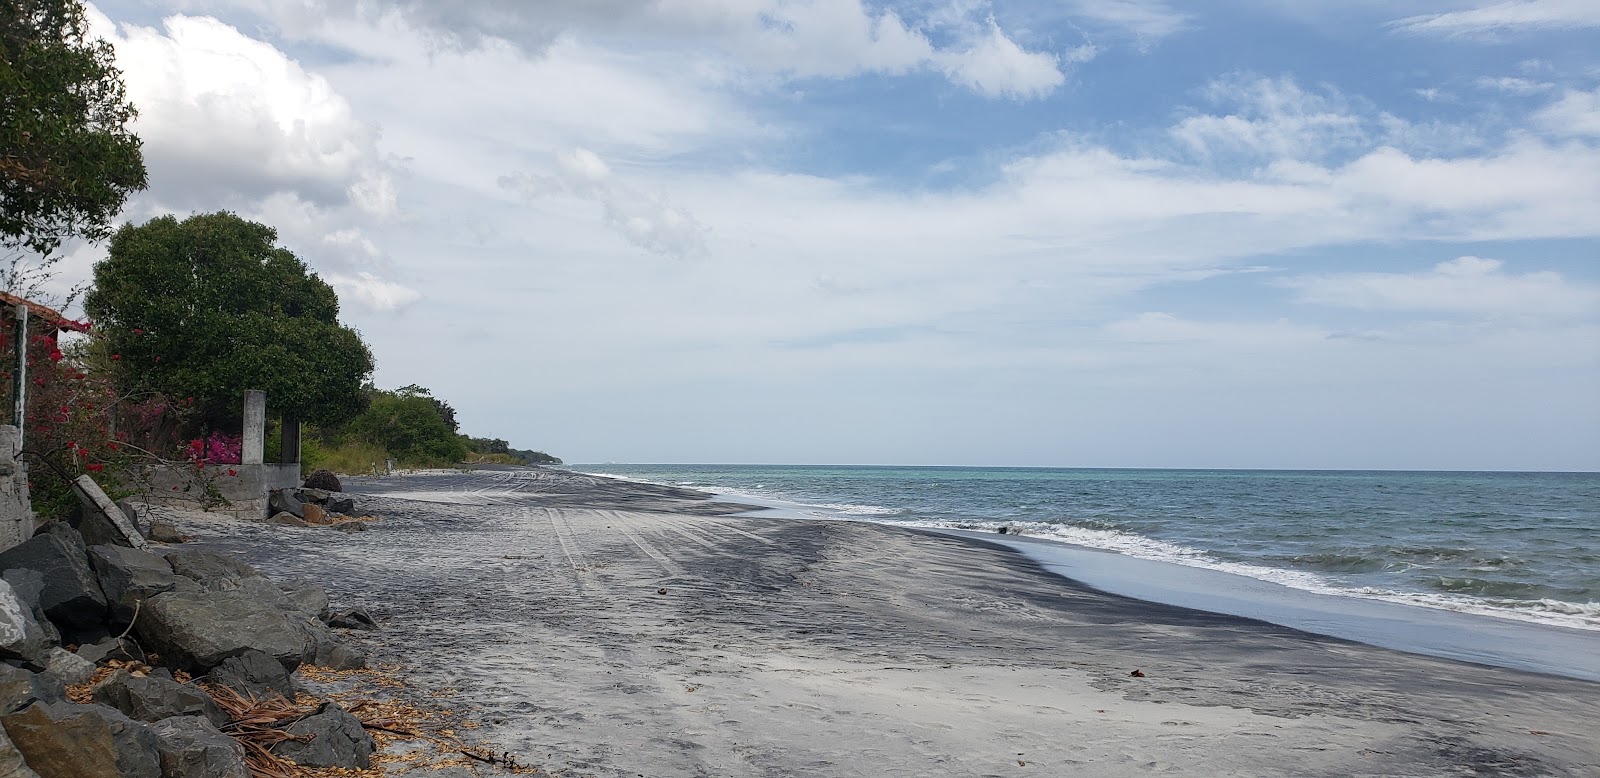 Foto von Juan Hombron Beach mit grauer sand Oberfläche